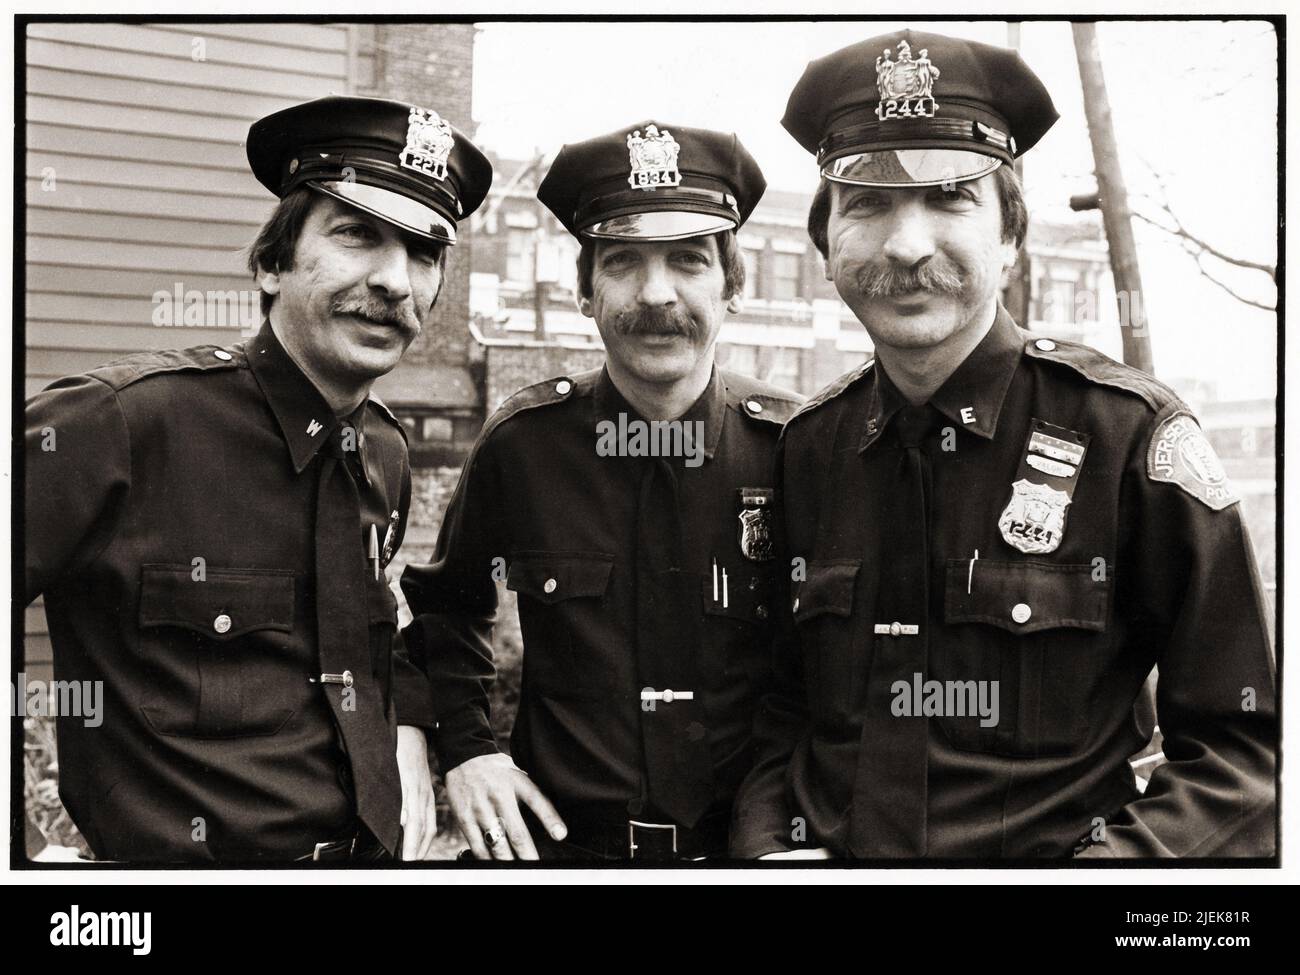 Die Koralja-Drillinge, von denen jeder ein Polizist der New Jersey City Polizei wurde. 1981. Stockfoto